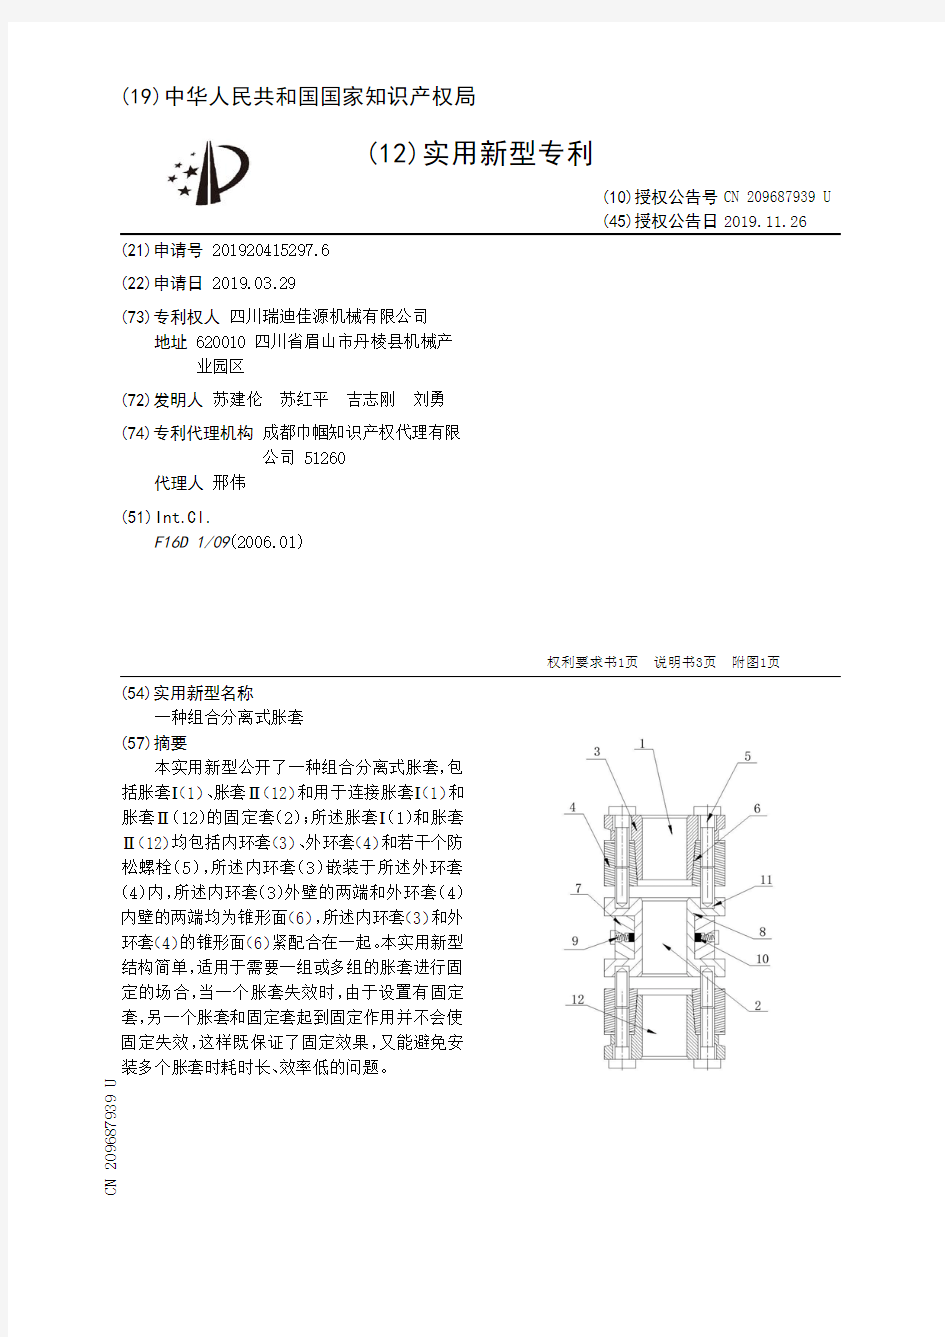 【CN209687939U】一种组合分离式胀套【专利】